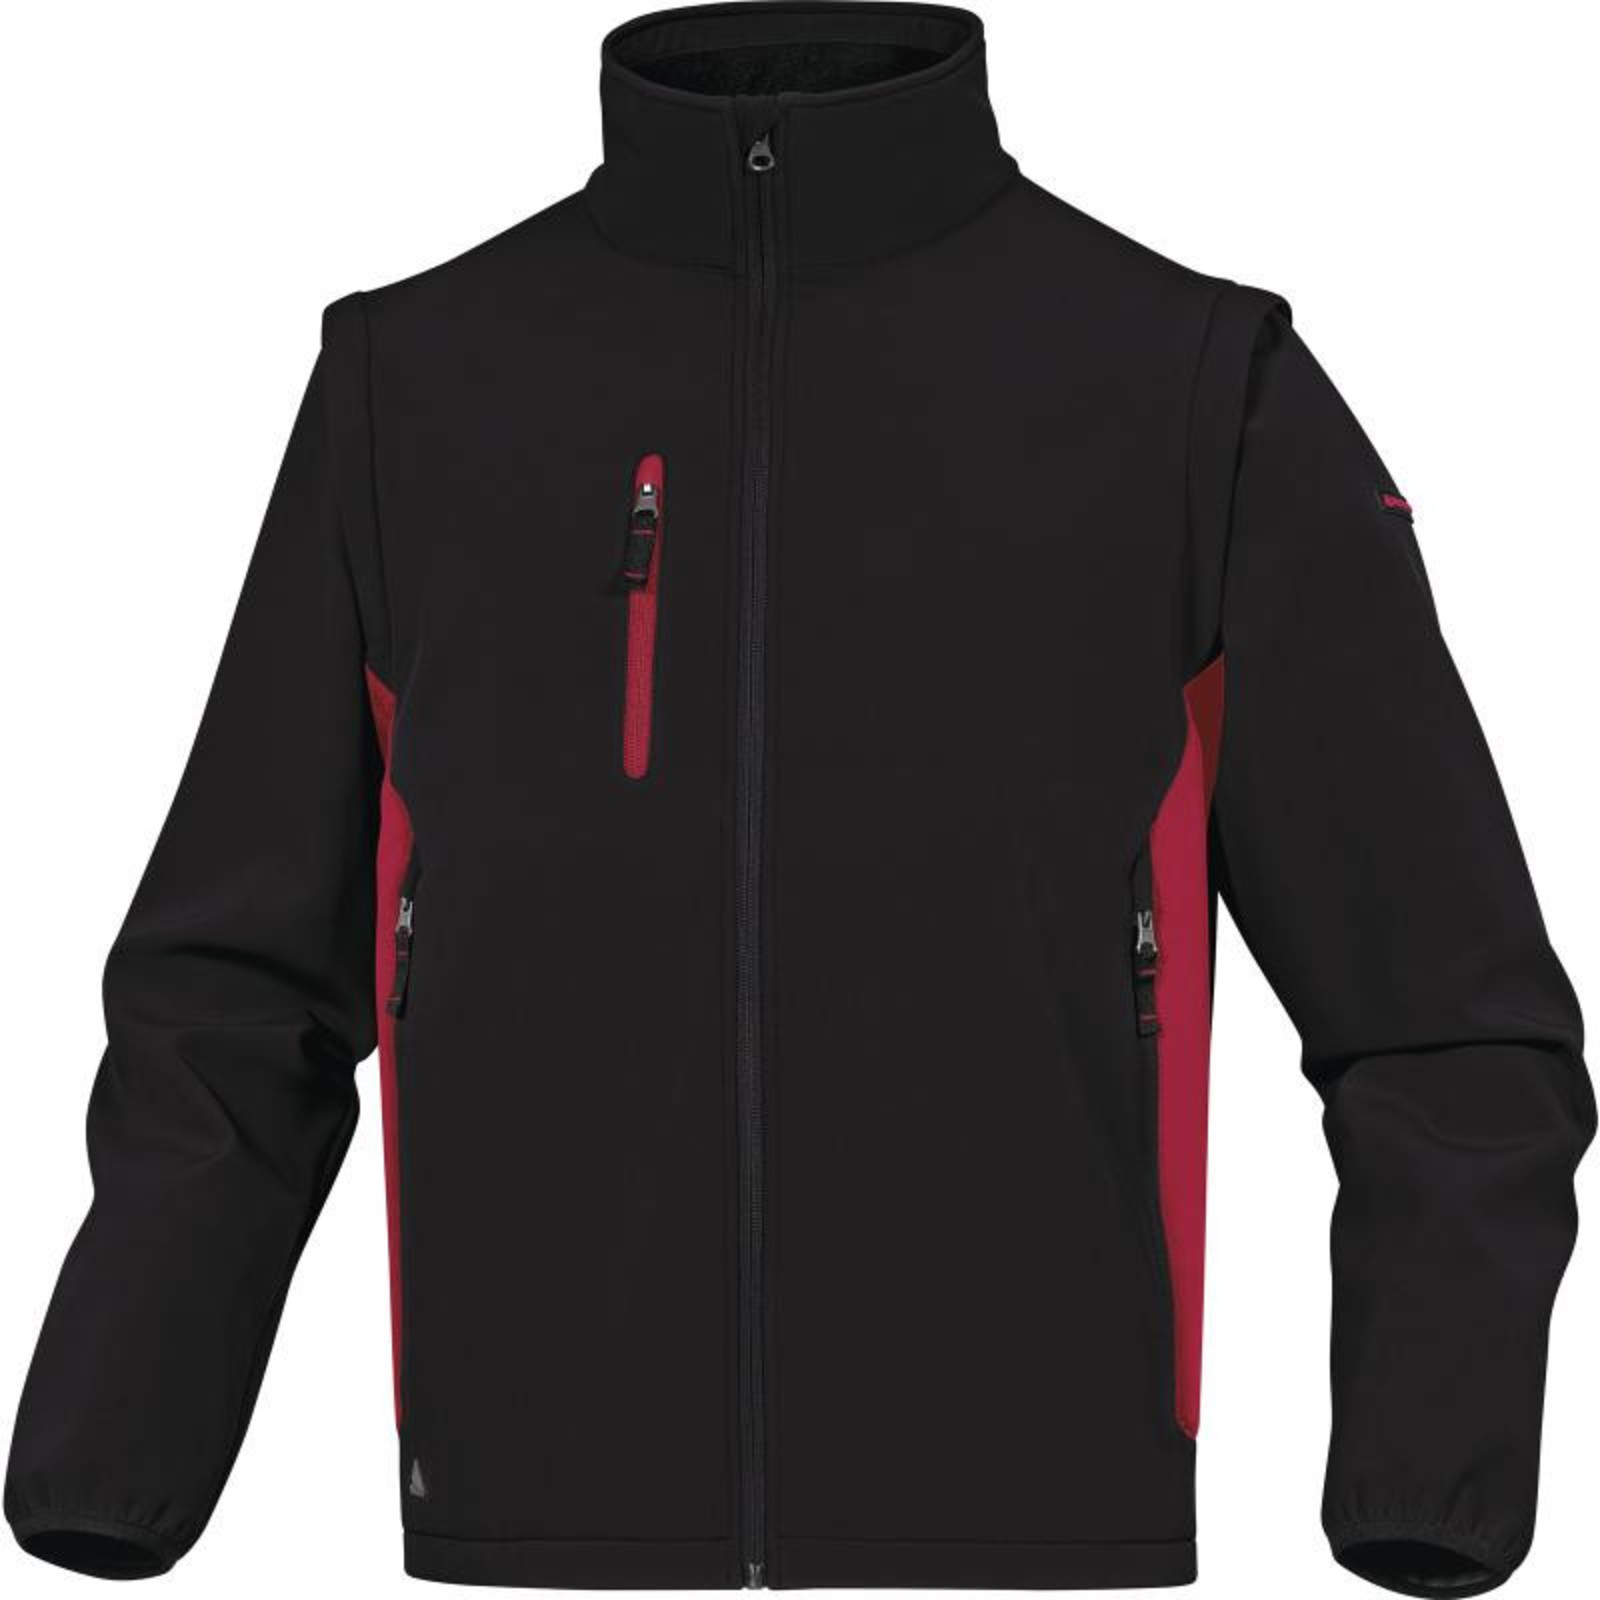 Softshellová bunda Delta Plus Mysen2 2v1 - veľkosť: 3XL, farba: čierna/červená